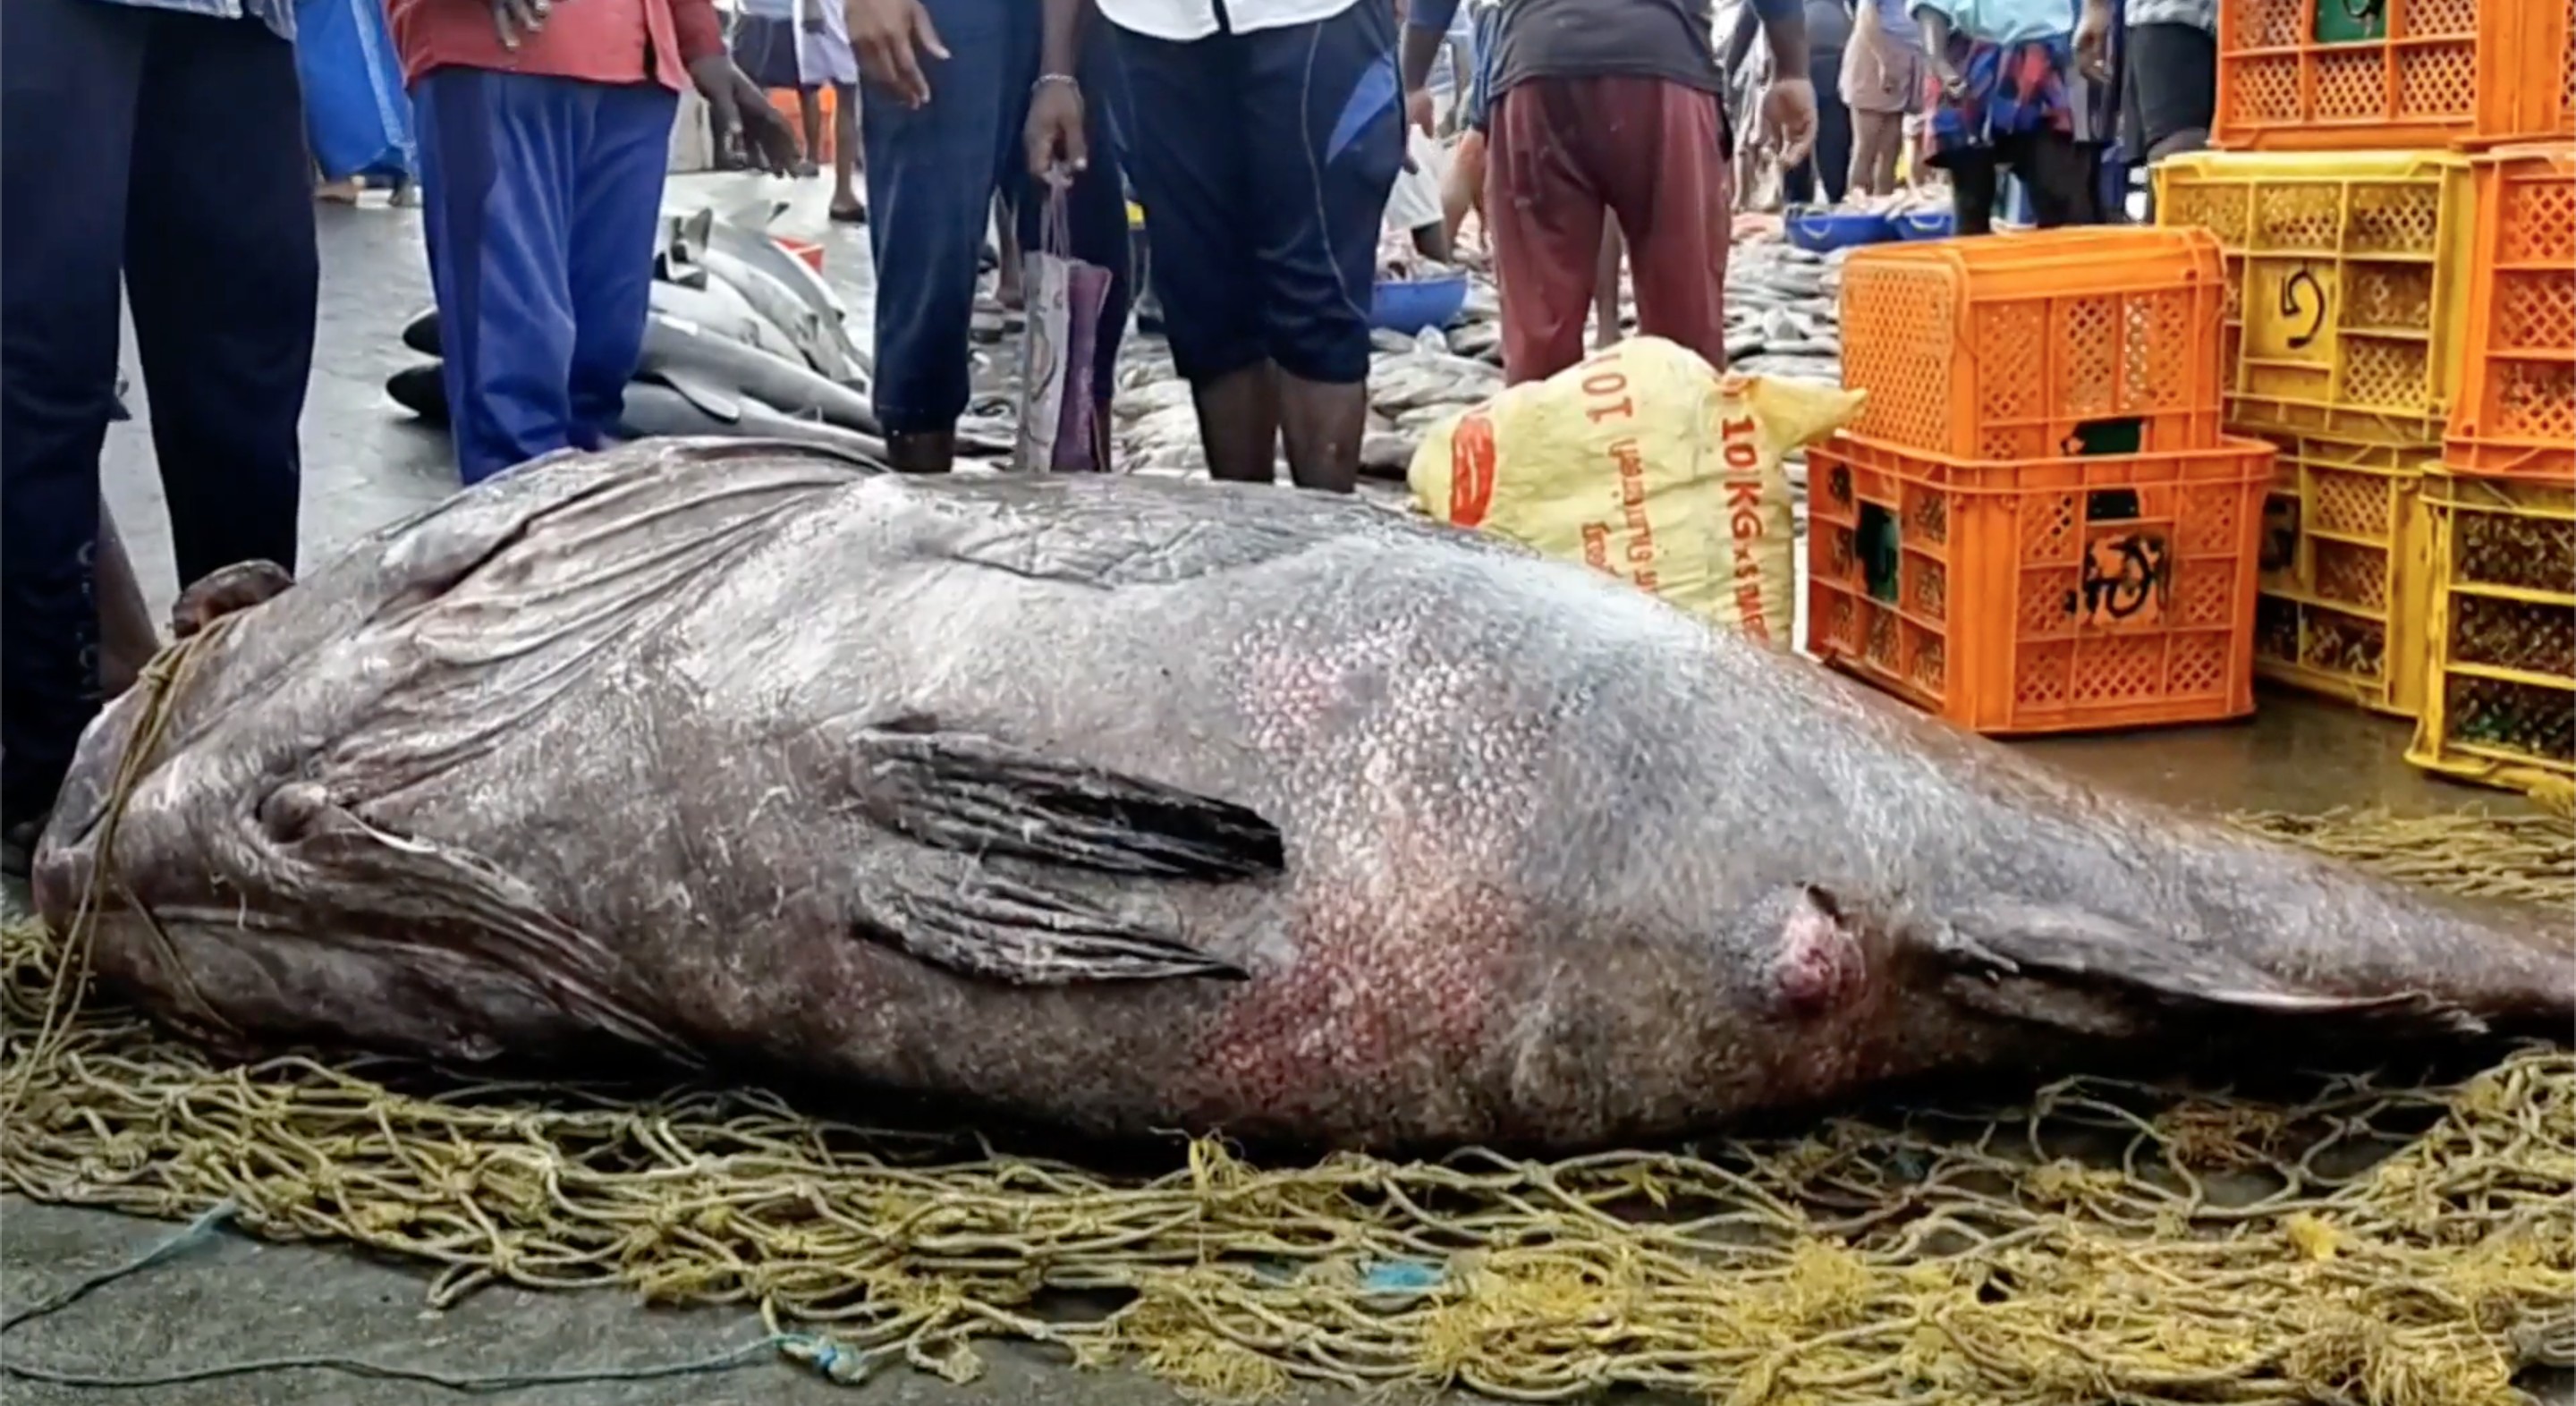 Peixe Garoupa de 450 kg, um tamanho impressionante sendo que o peso da espécie nessa região costuma ser de 5 a 10 kg (Foto: Reprodução: vídeo Newsflare)